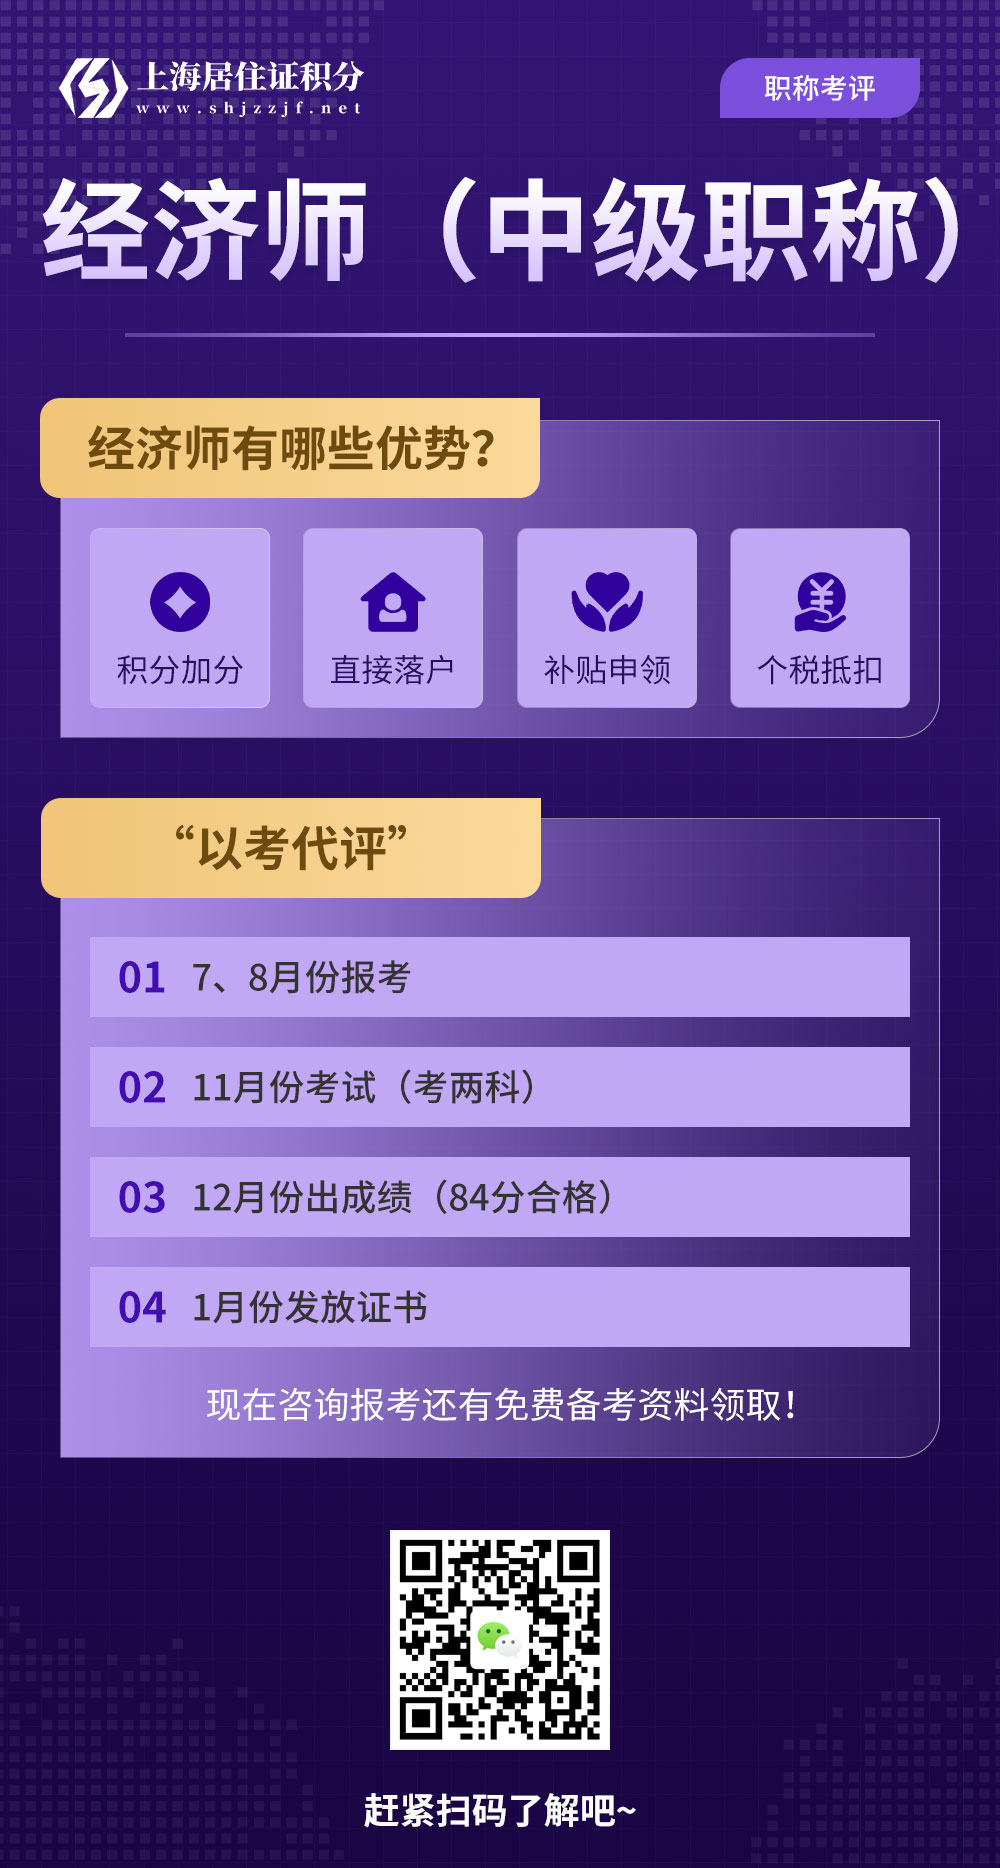 一年一次的考试!这个证书有助于上海居住证积分、落户上海、升职加薪......